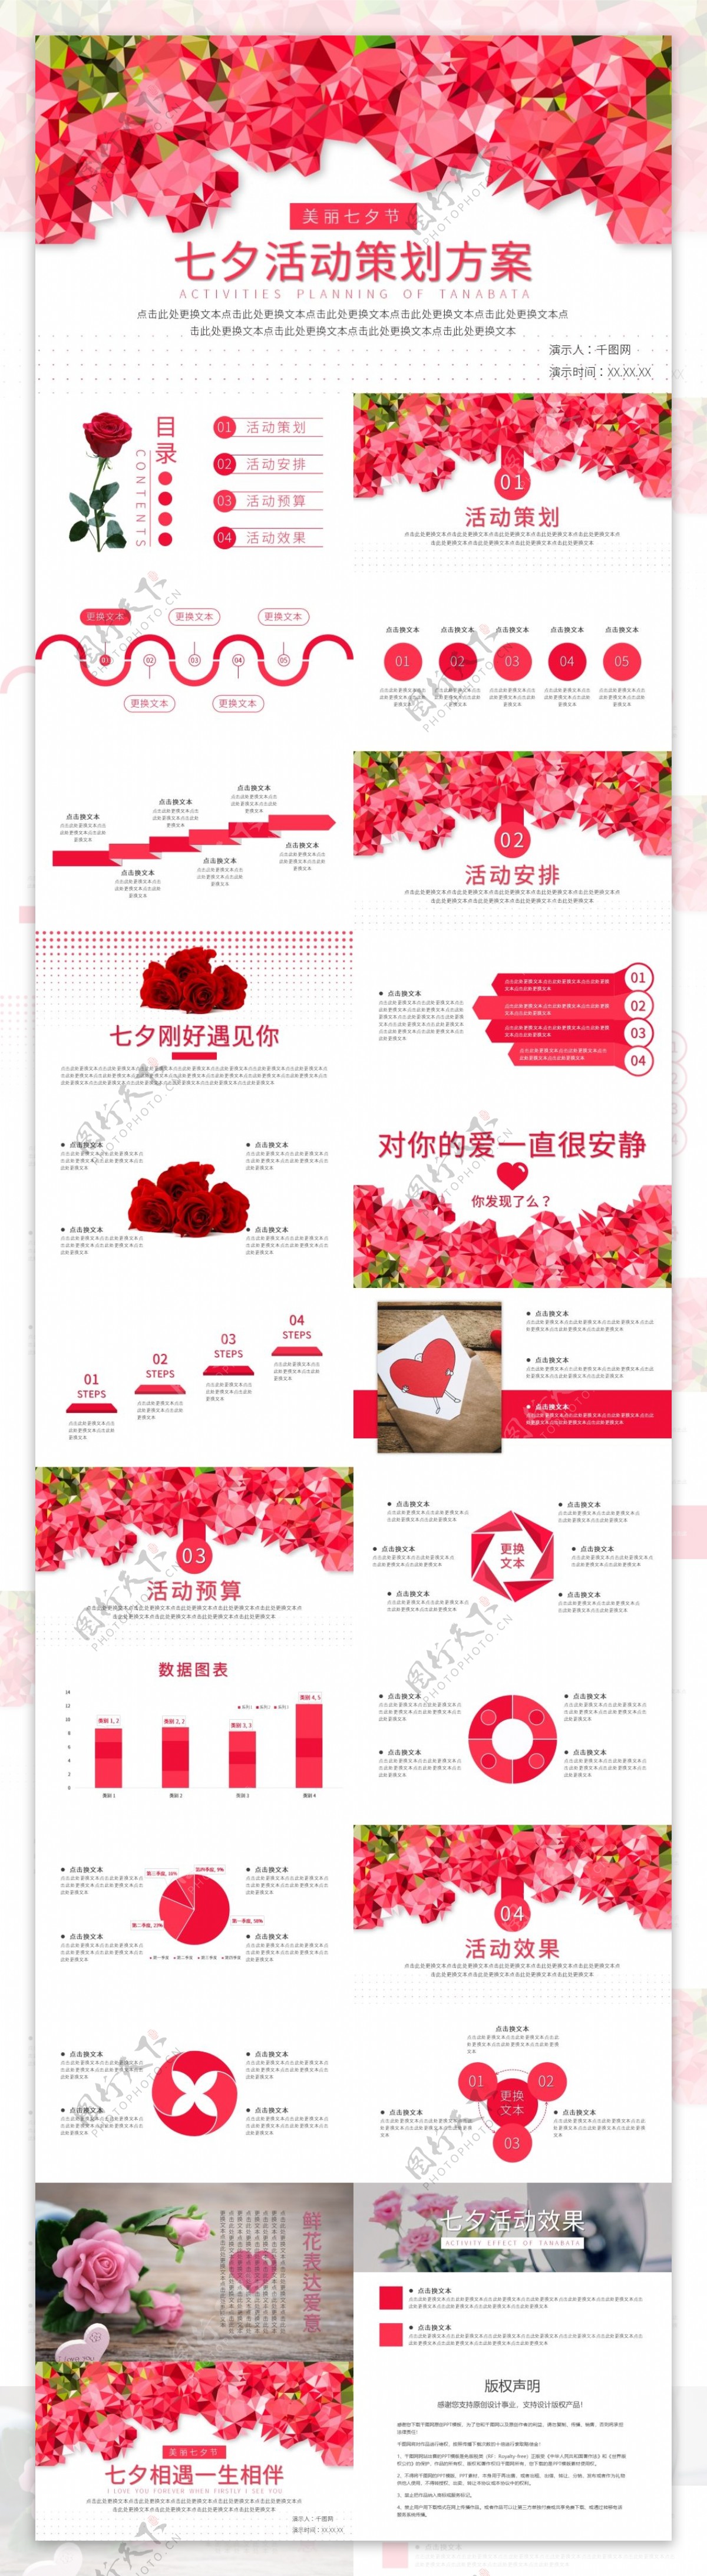 七夕情人节金融投资理财产品营销手机海报_图片模板素材-稿定设计